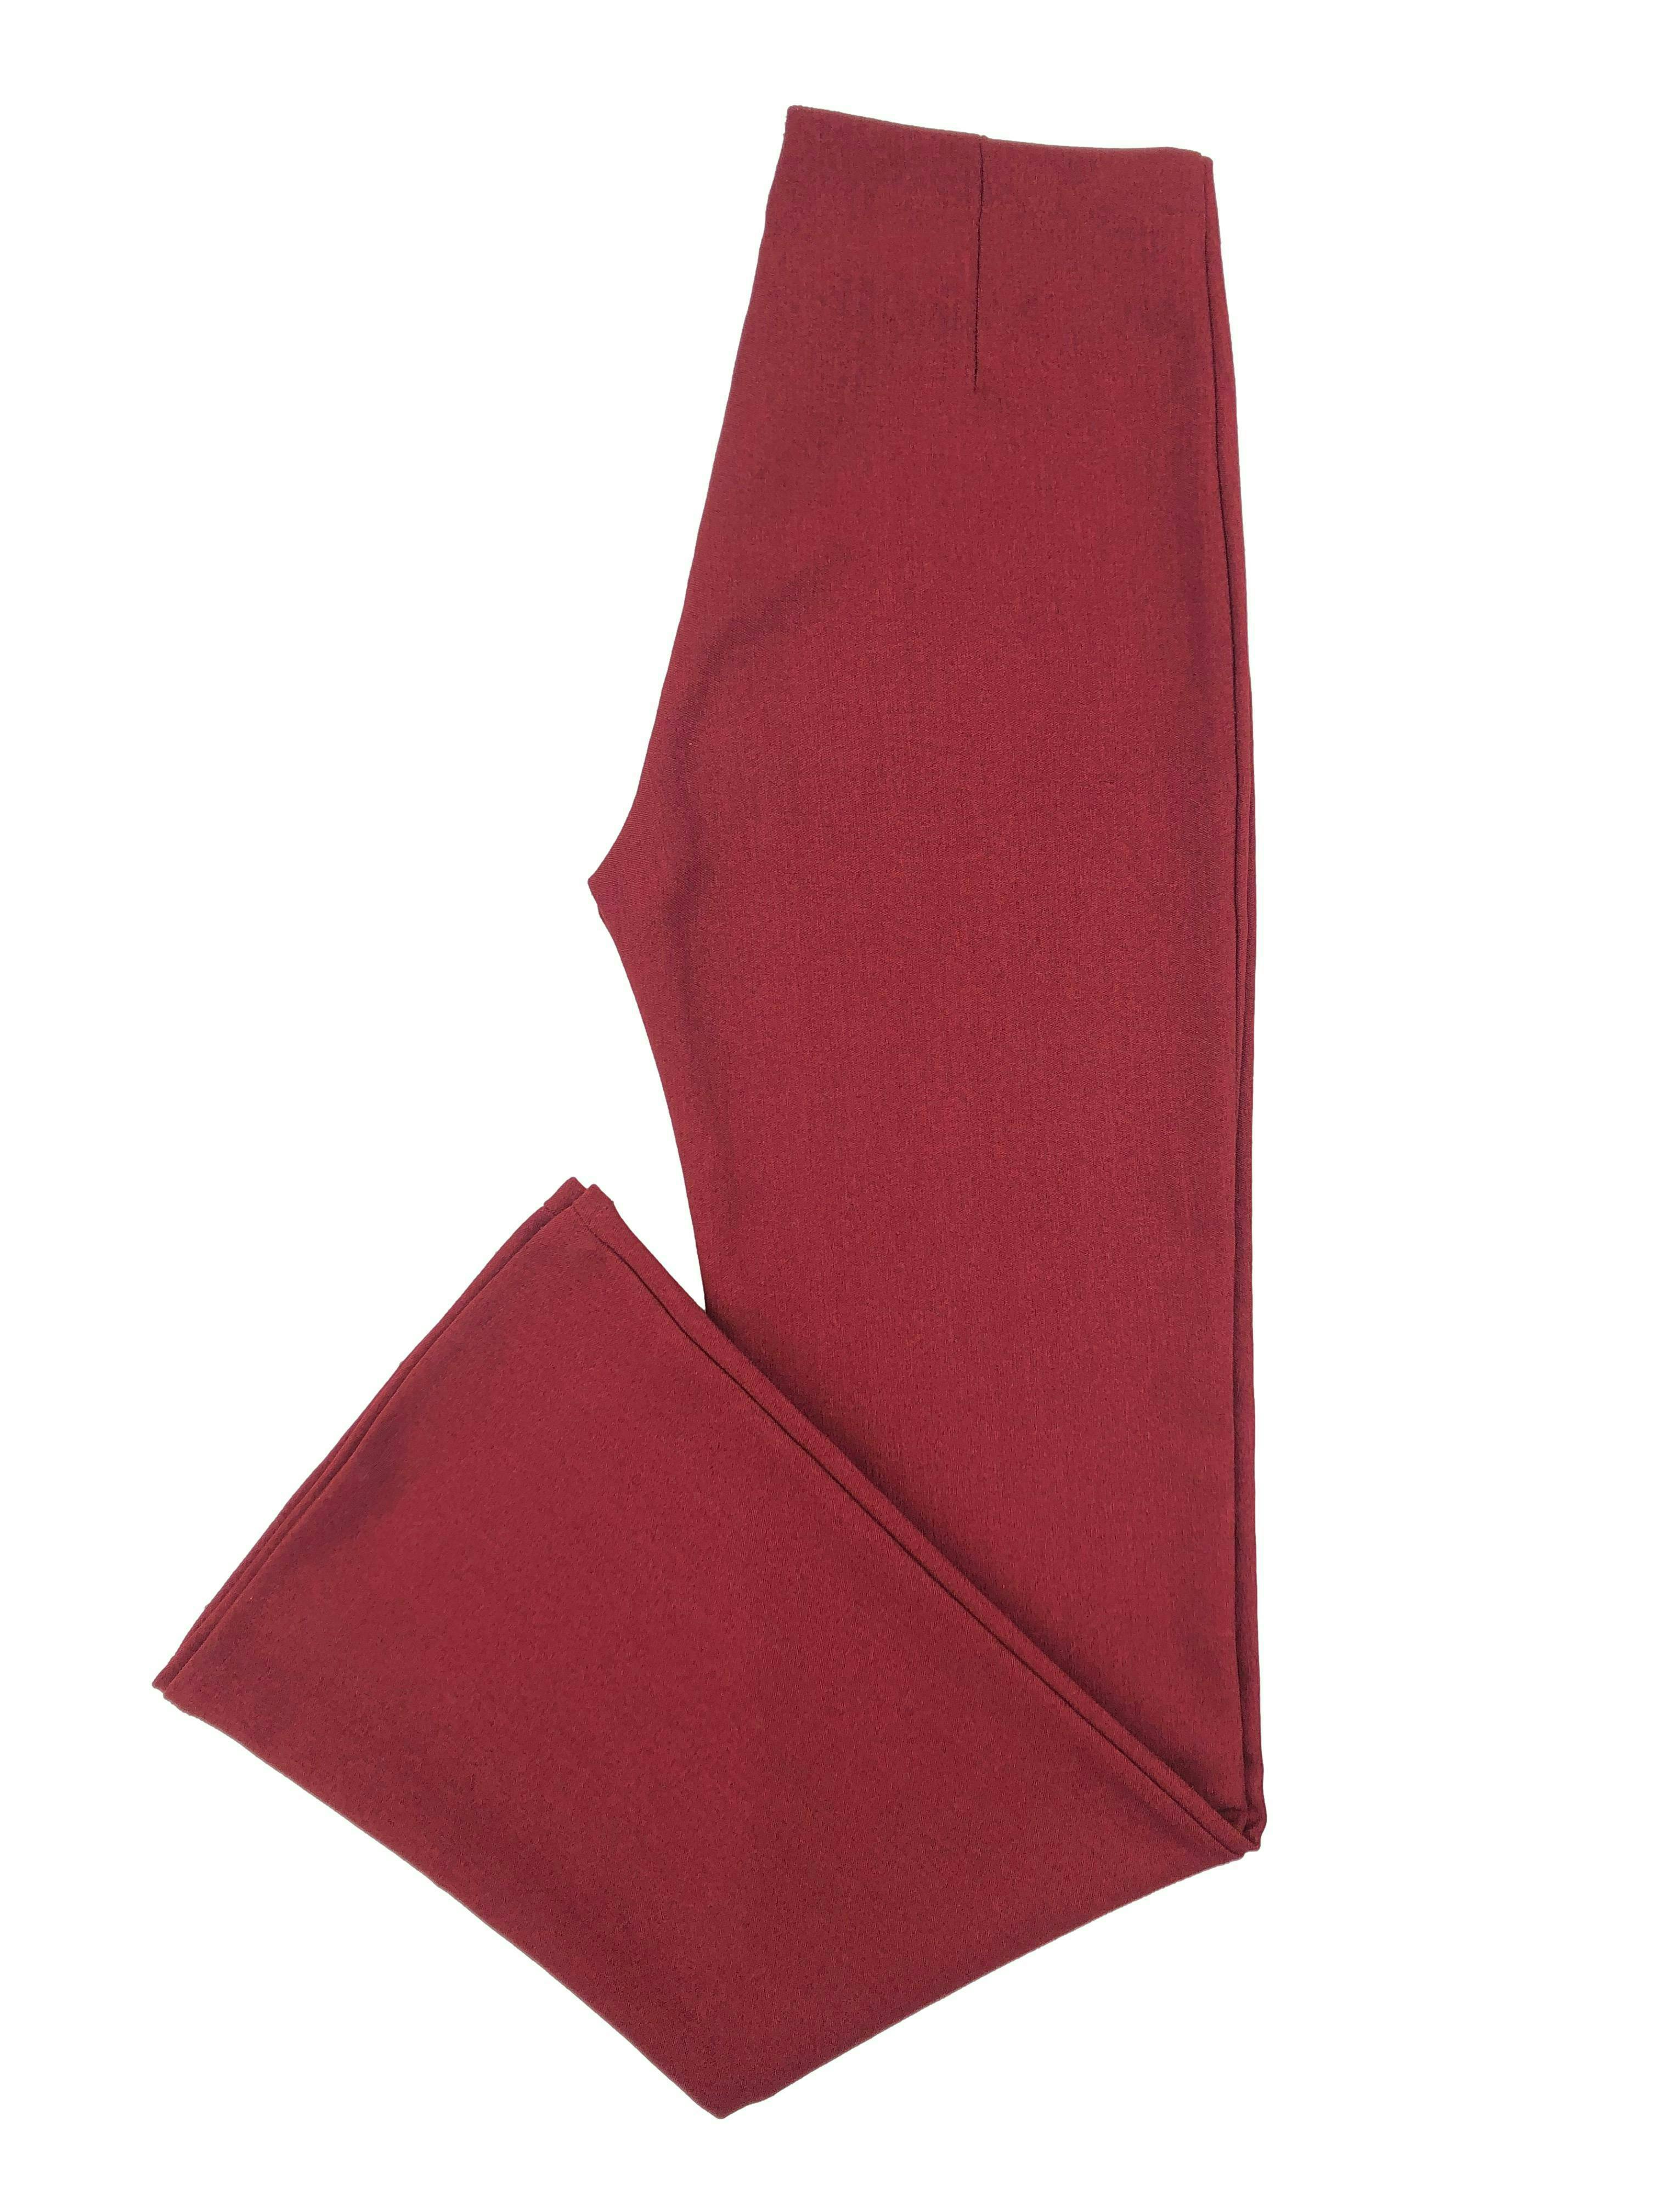 Pantalón de vestir rojo vino de tiro alto, corte recto con pinzas y cierre lateral. Cintura 76cm, Tiro 28cm, Largo 108cm.